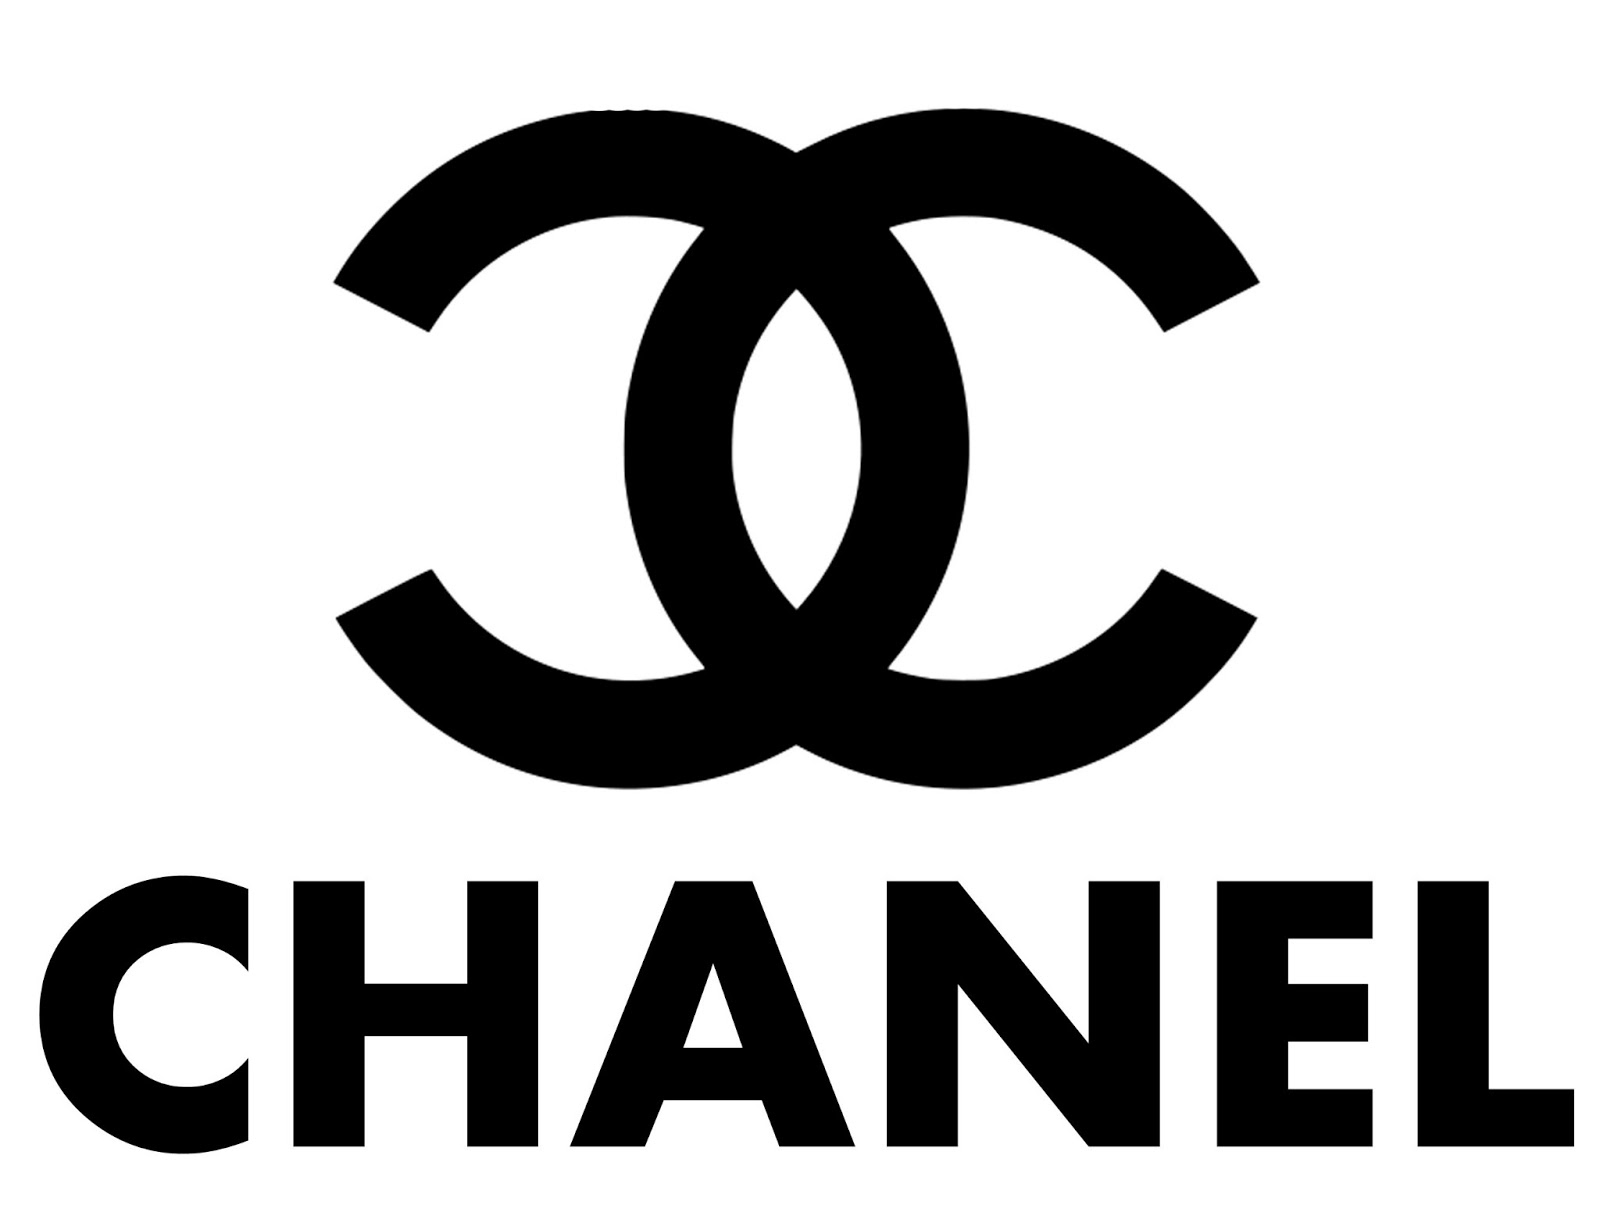 Chanel Số 5 Dán Logo  Coco Chanel png tải về  Miễn phí trong suốt Văn Bản  png Tải về